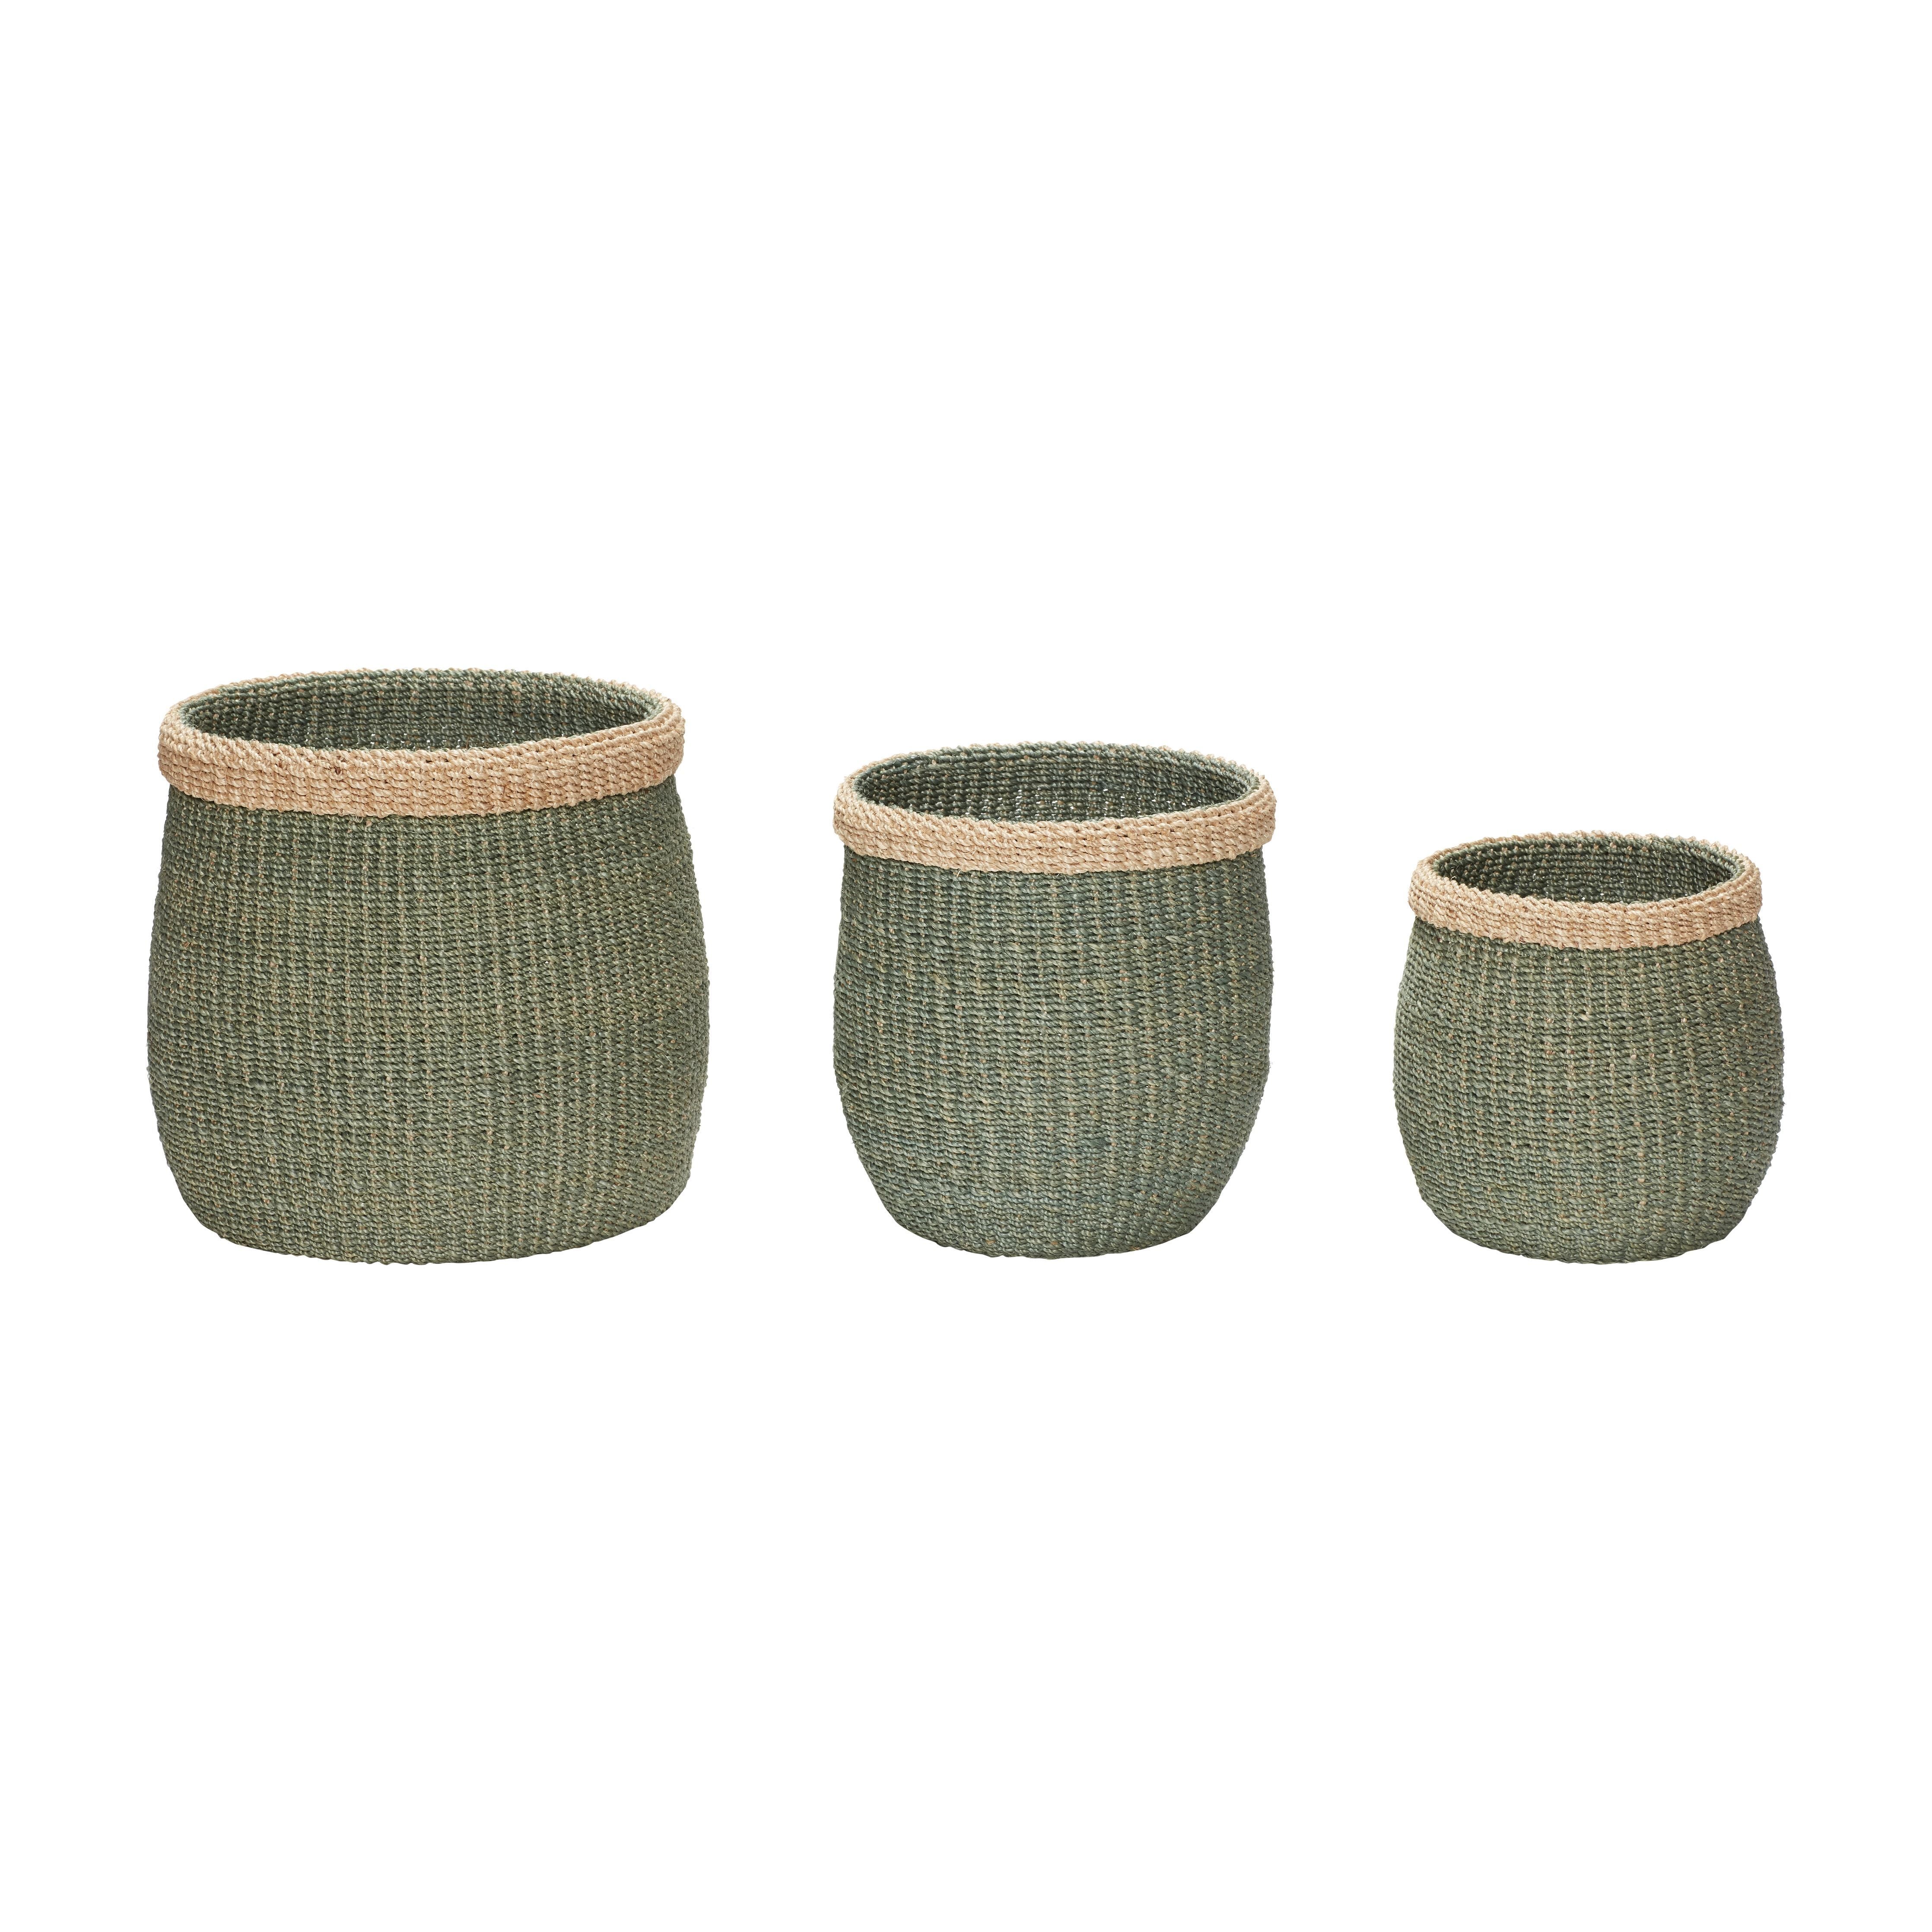 Hübsch Moss Baskets (Set Of 3), Green/Natural